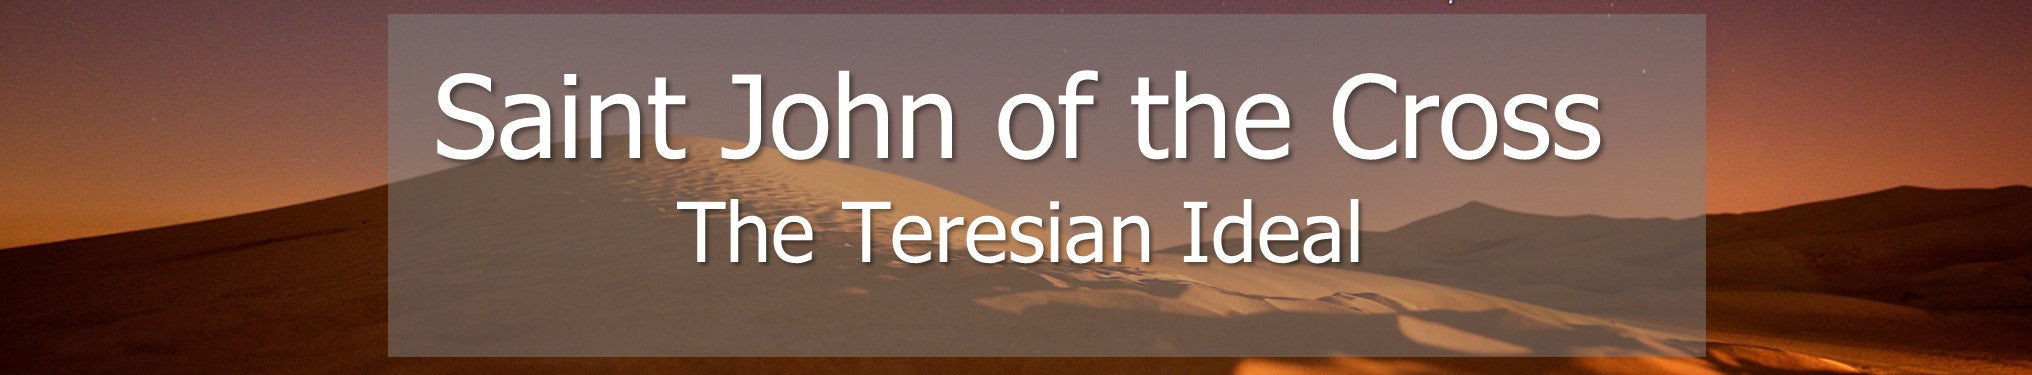 Saint John of the Cross - The Teresian Ideal